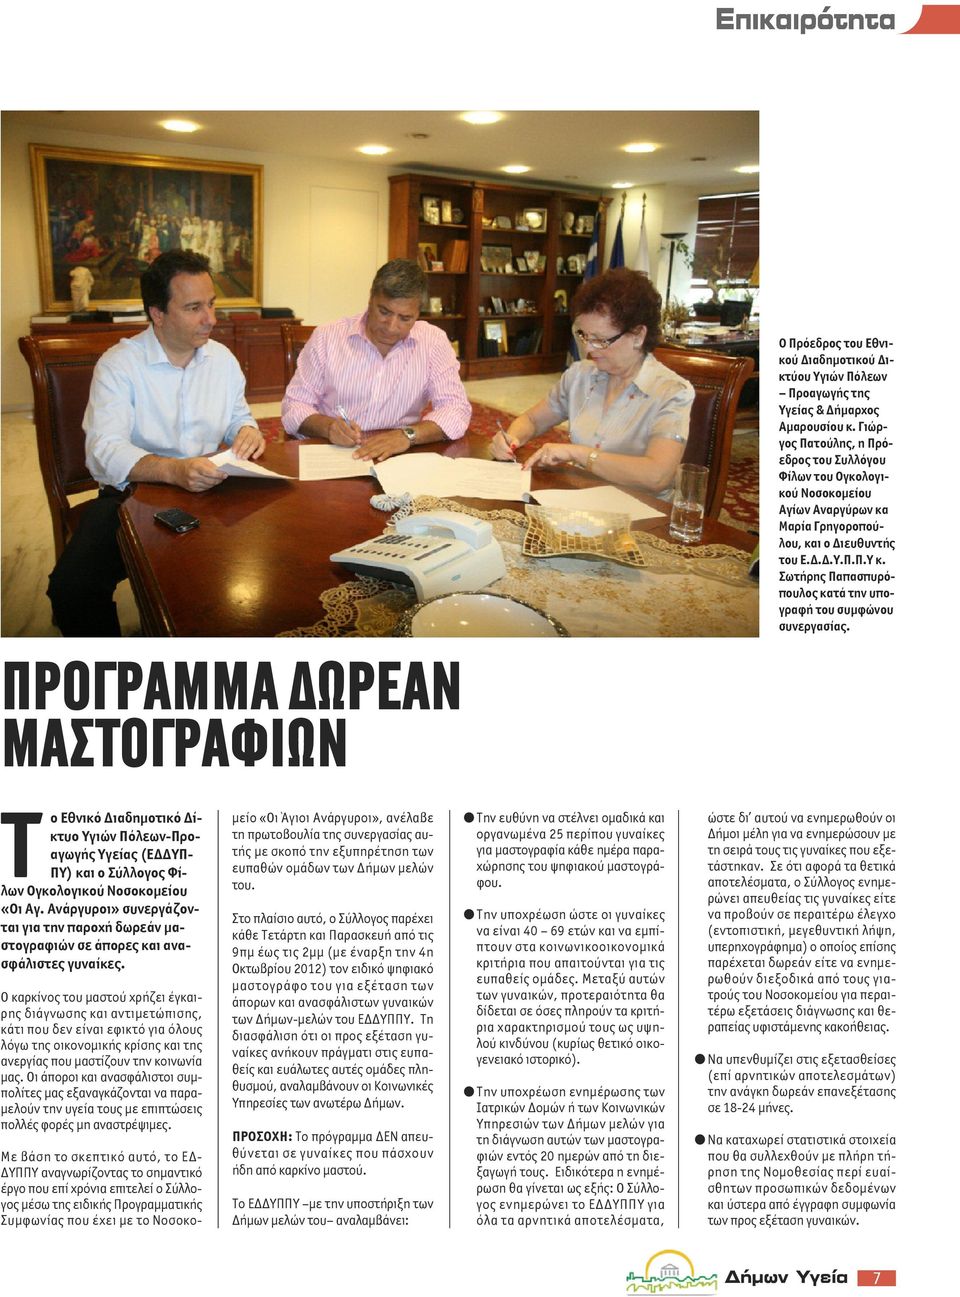 Σωτήρης Παπασπυρόπουλος κατά την υπογραφή του συμφώνου συνεργασίας.